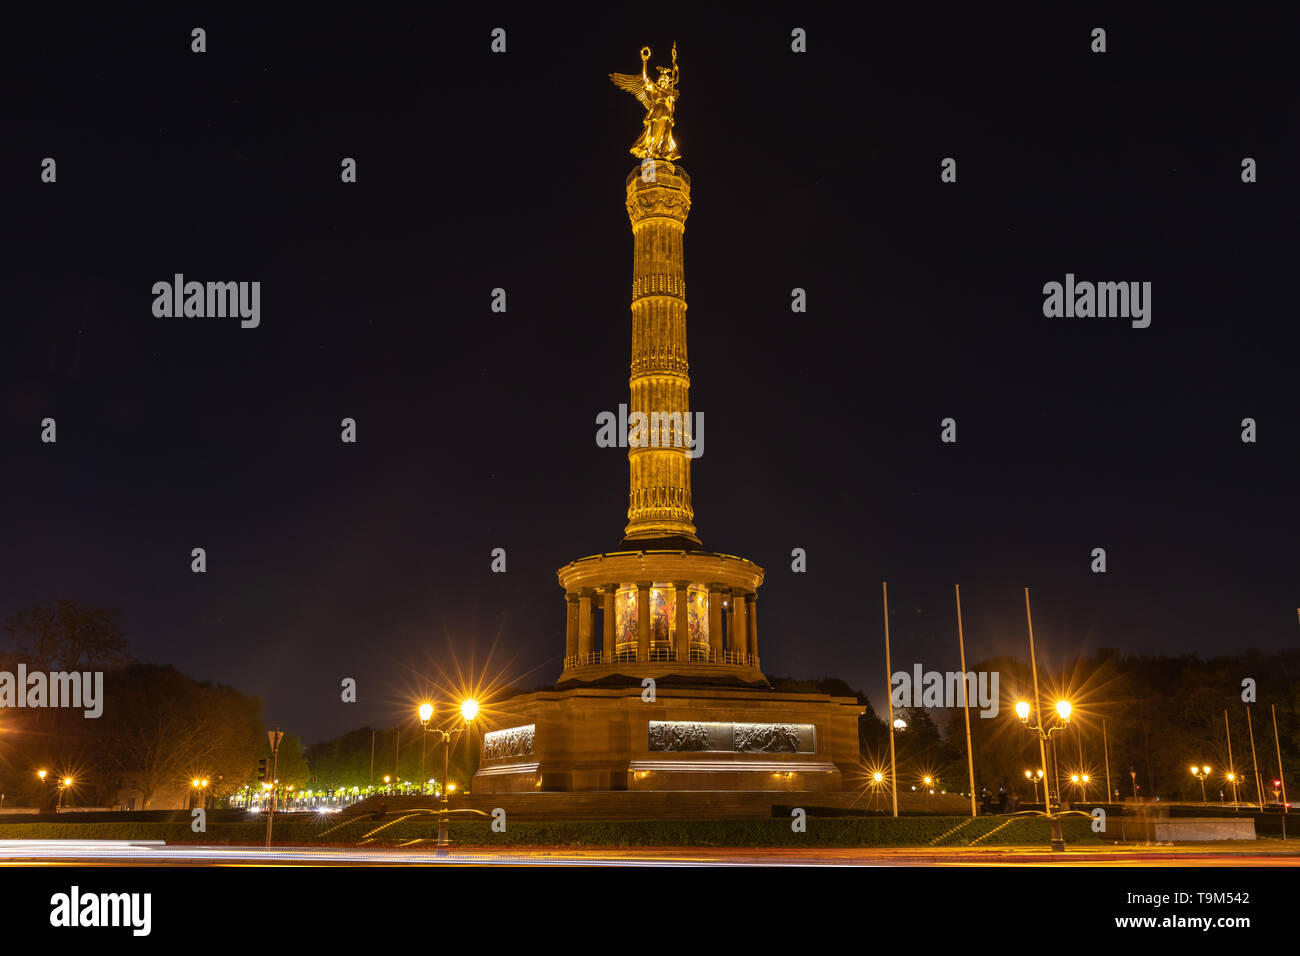 Nacht Blick von der Siegessäule mit der goldenen Statue von Victoria auf der Oberseite, am Großen Stern Platz in Berlin, Deutschland Stockfoto